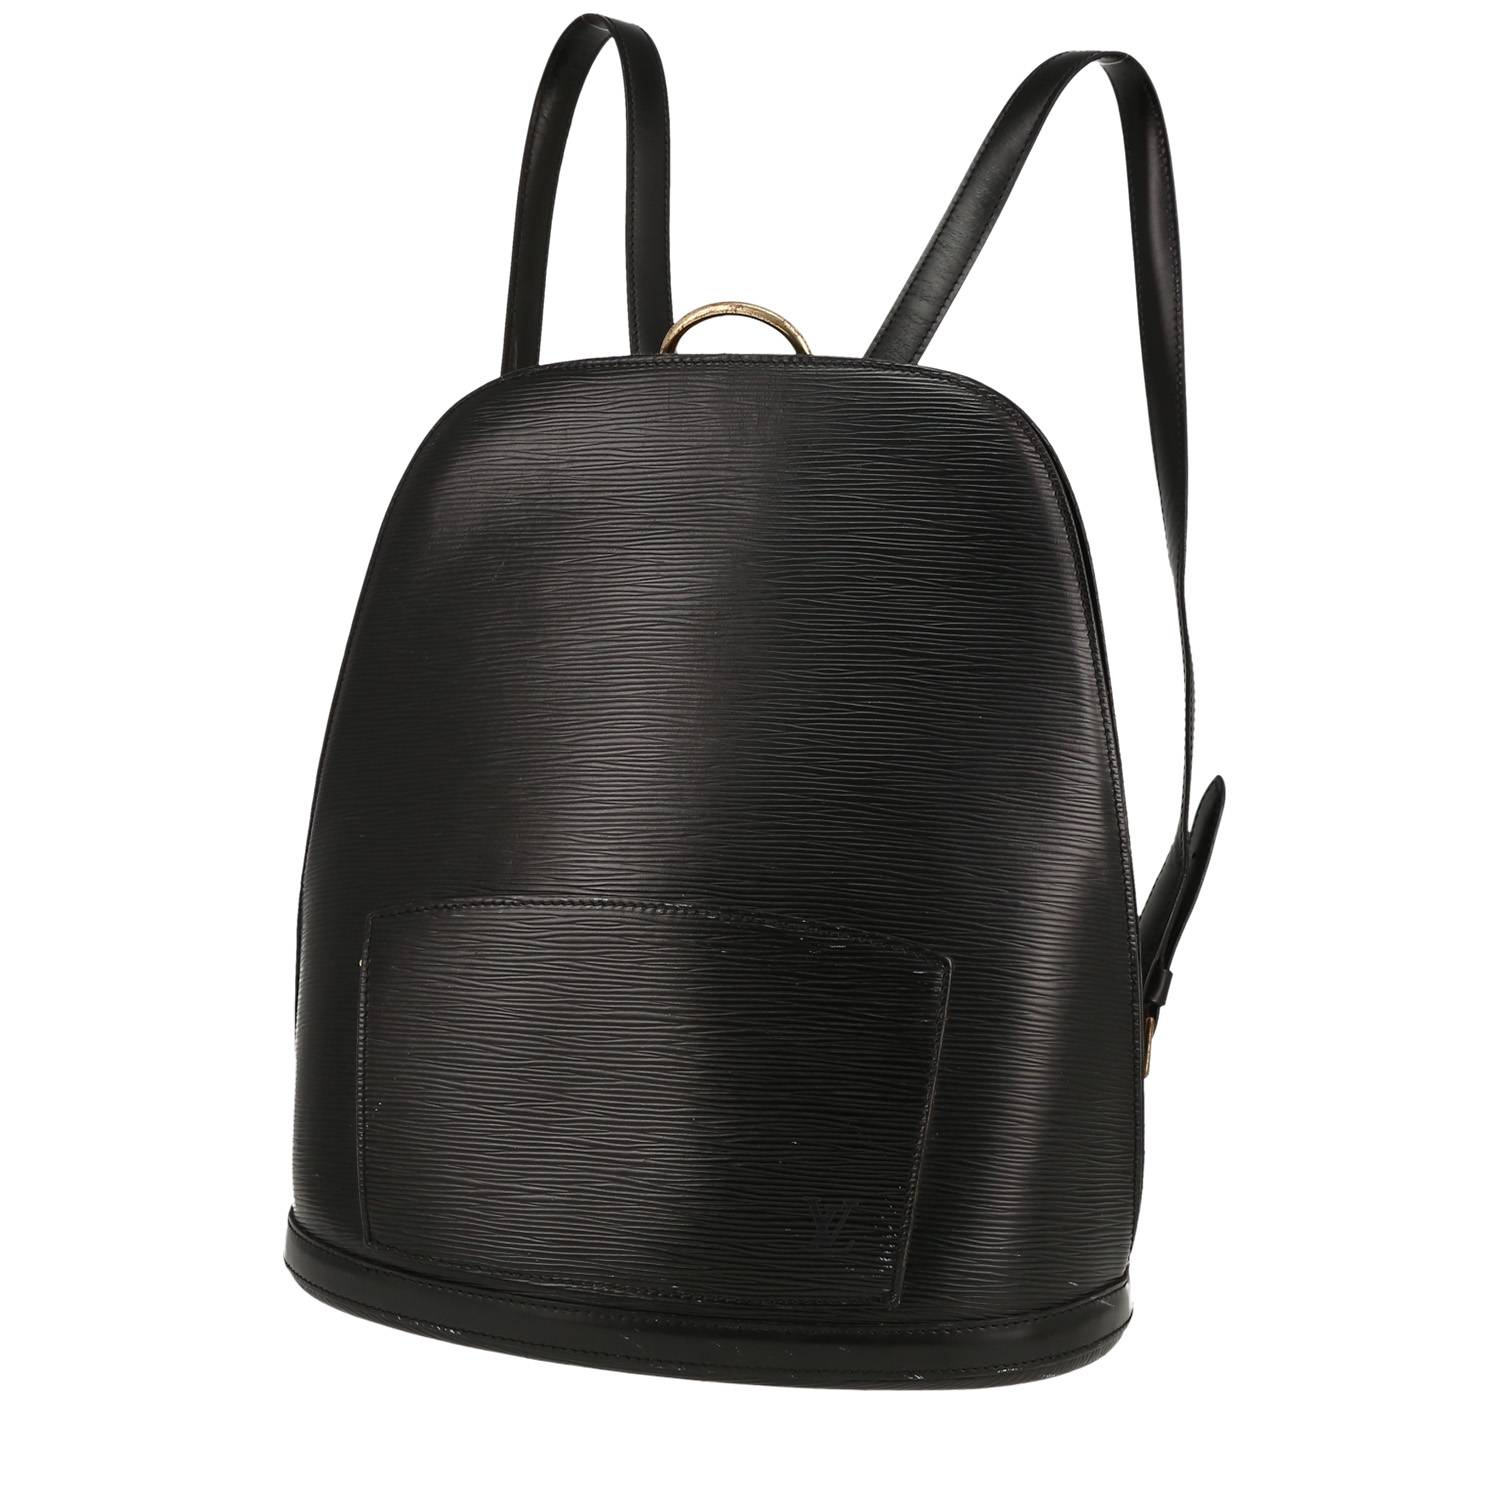 Élégant sac à dos Louis Vuitton Gobelins - Backpack en cuir épi noir, garniture en métal doré, double anse réglable en cuir noir permettant un porté dos. Fermeture zippée. Une poche zippée à l'avant du sac. Doublure intérieure en suédine grise, une poche plaquée. Signature: 